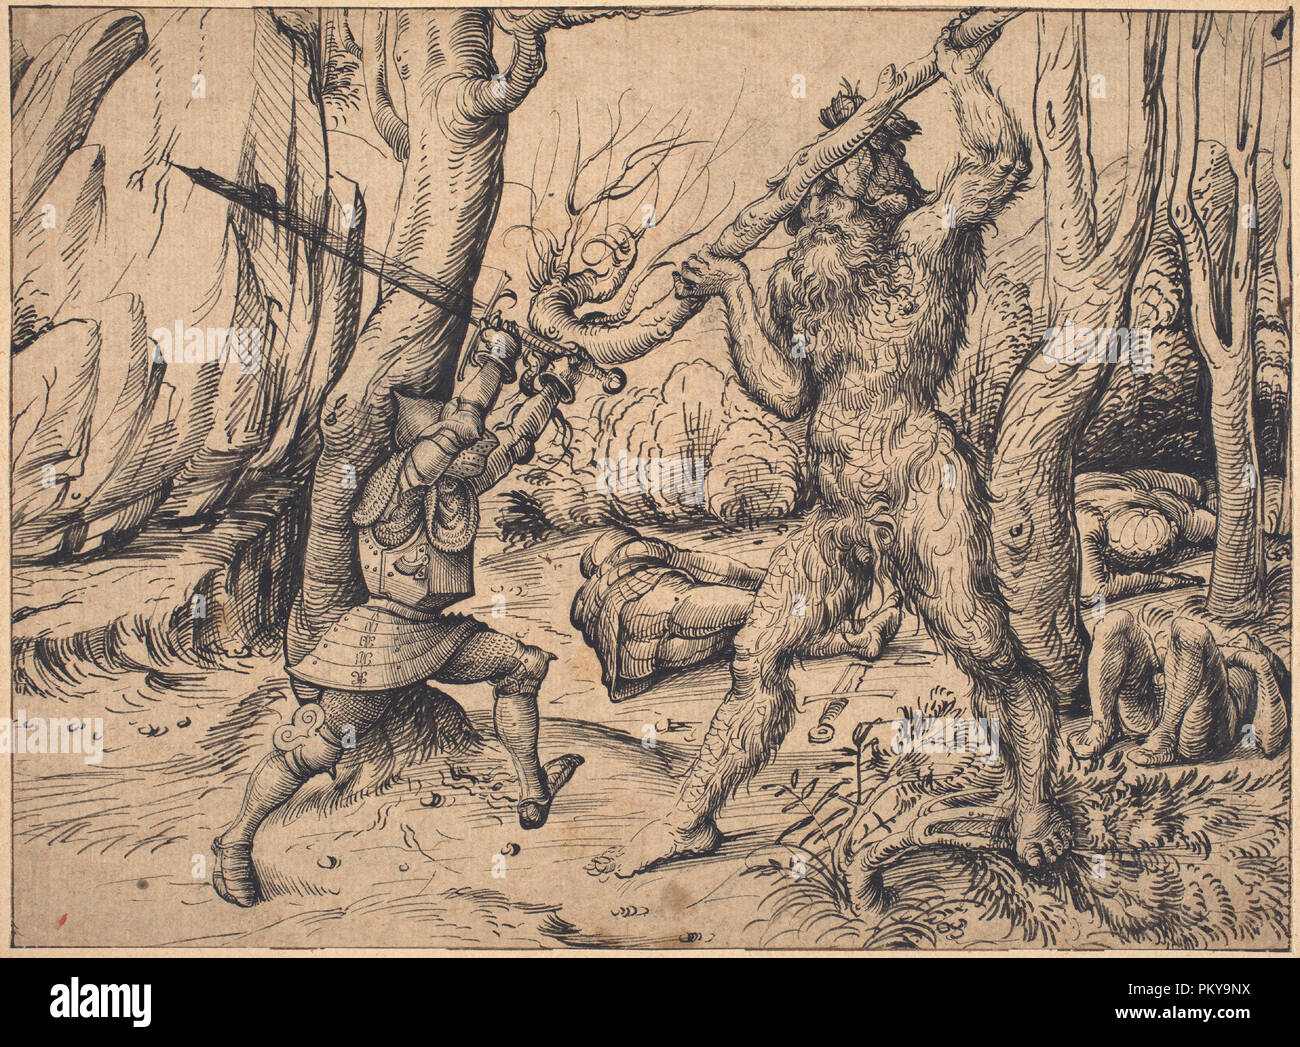 La lutte dans la forêt. En date du : ch. 1500/1503. Dimensions : hors tout : 21 x 28,6 cm (8 1/4 x 11 1/4 in.) support : 26,7 x 35,7 cm (10 1/2 x 14 1/16 in.). Médium : plume et encre noire sur papier vergé. Musée : National Gallery of Art, Washington DC. Auteur : Hans Burgkmair I. Banque D'Images